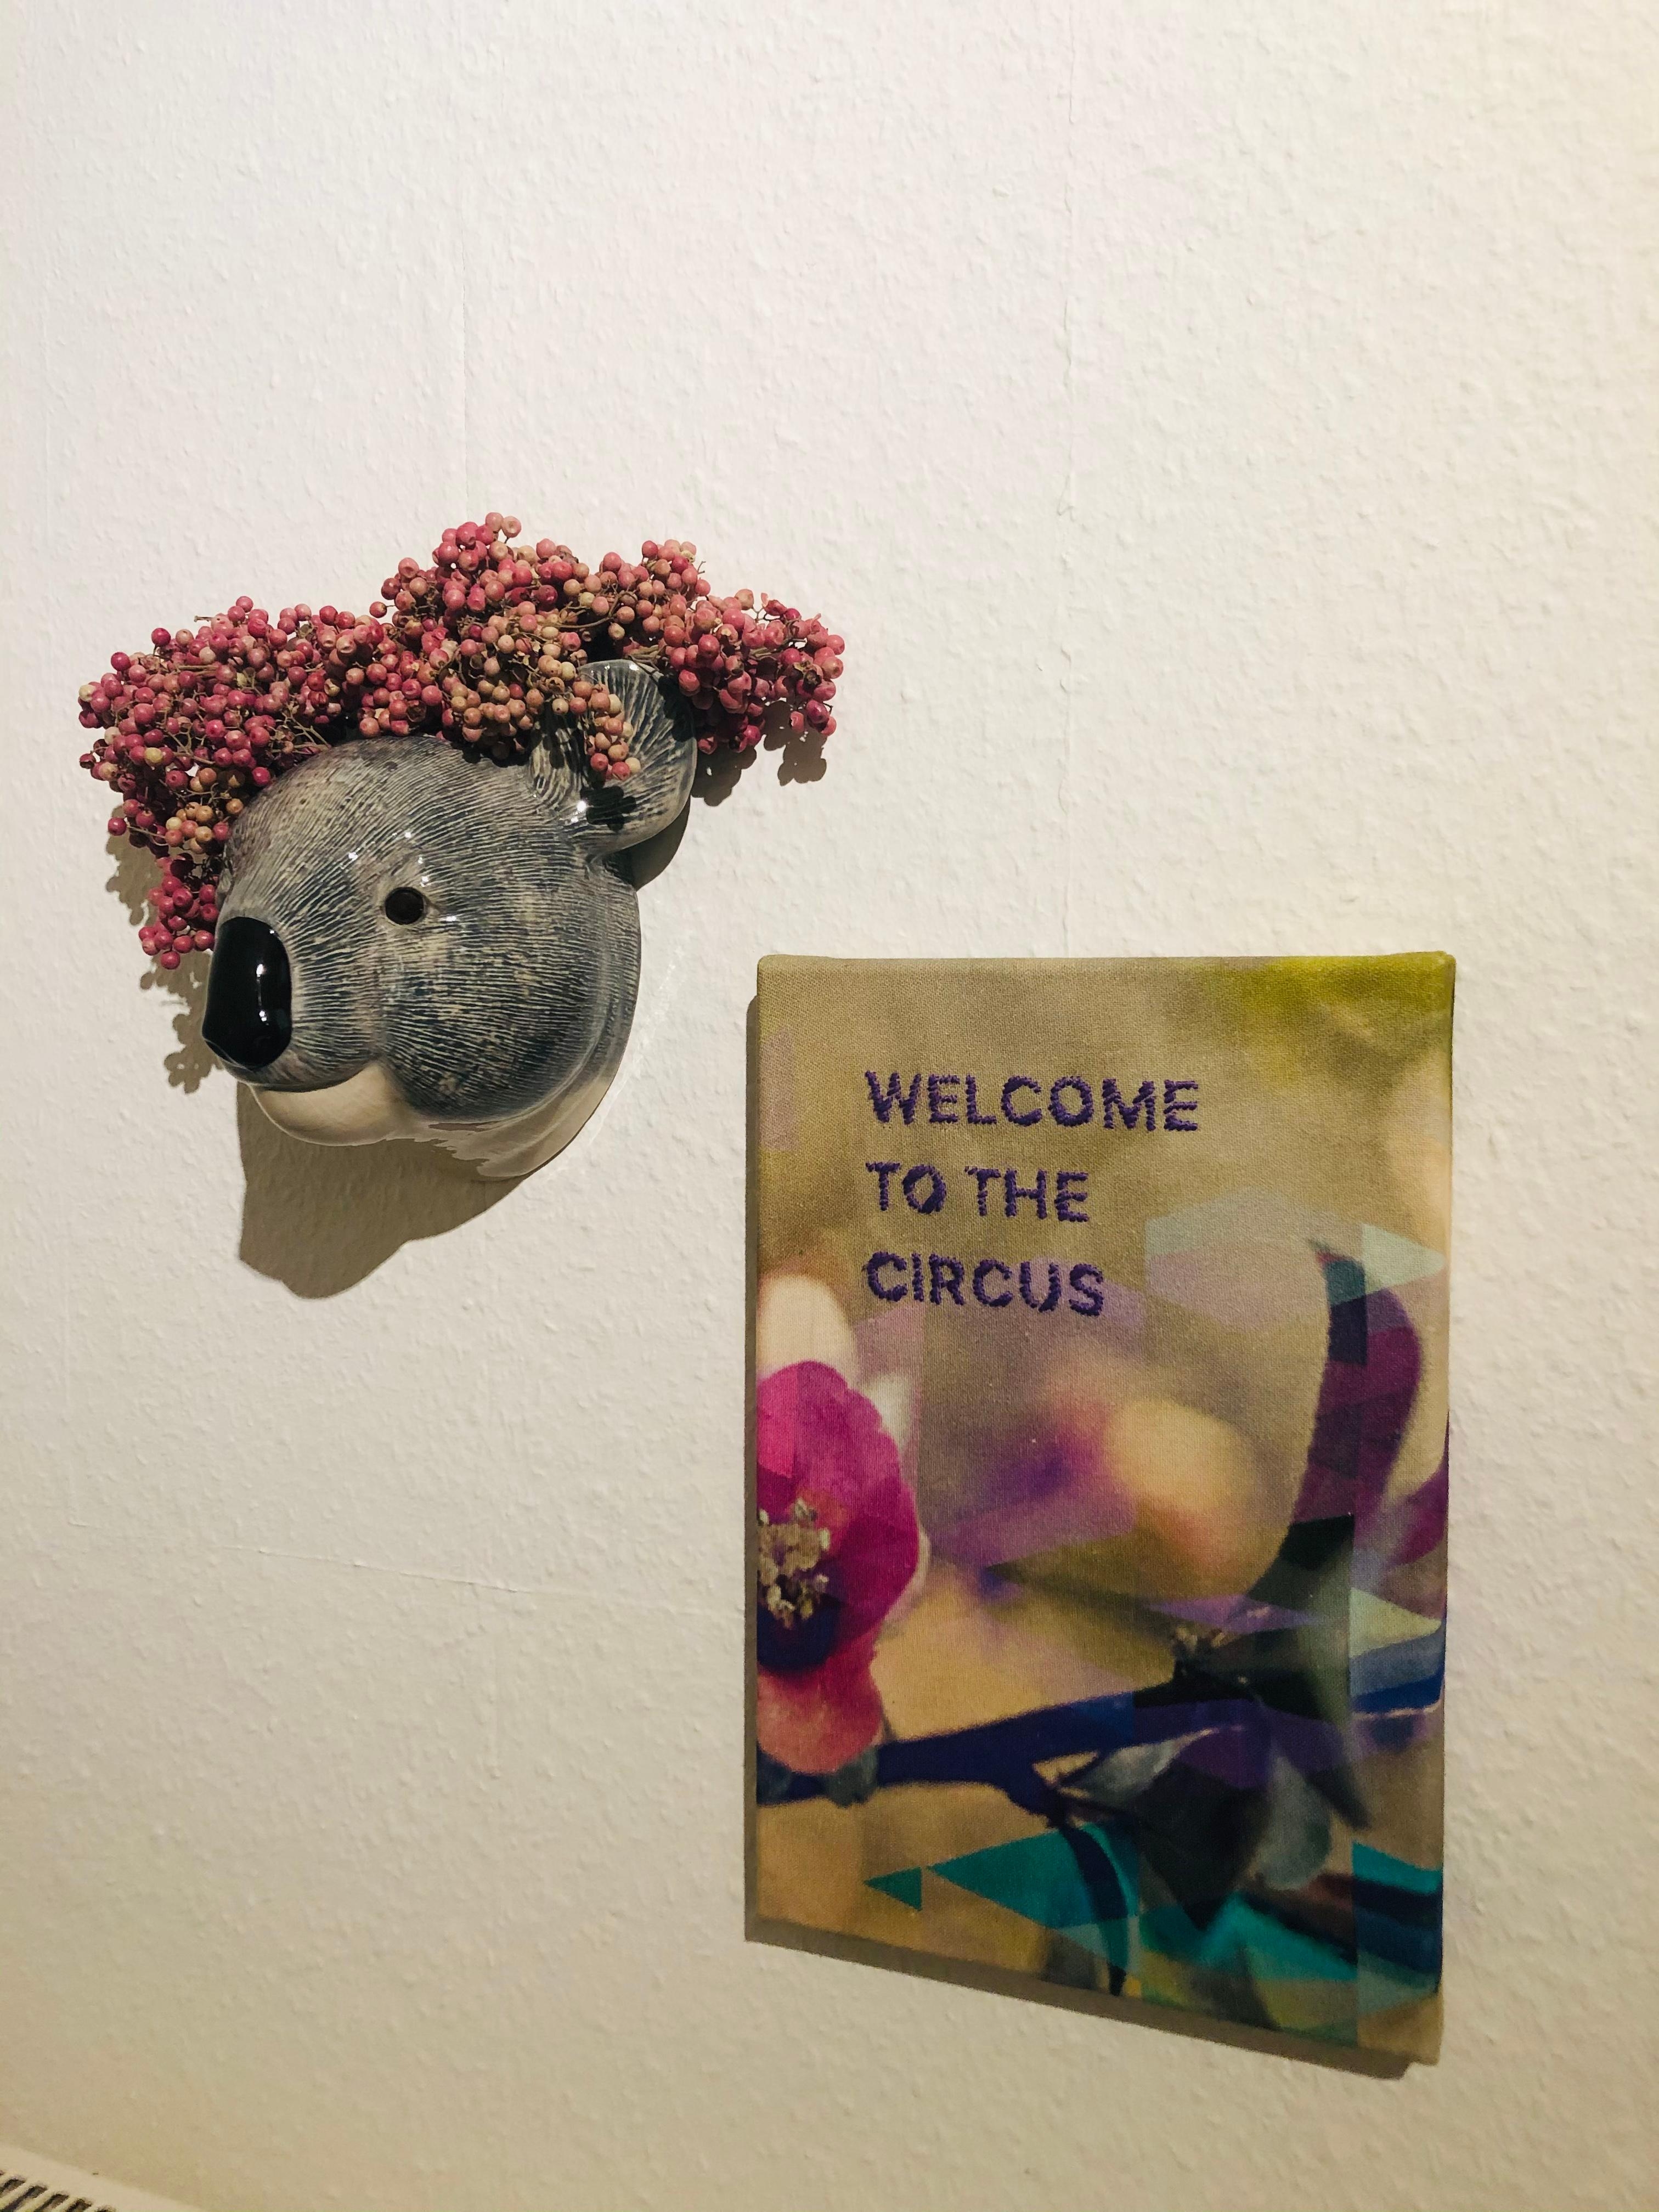 Welcome to the Circus 🎪 
Ein Upcyclingprojekt mit alter Leinwand, etwas Stoffrest und Garn zum Sticken. 